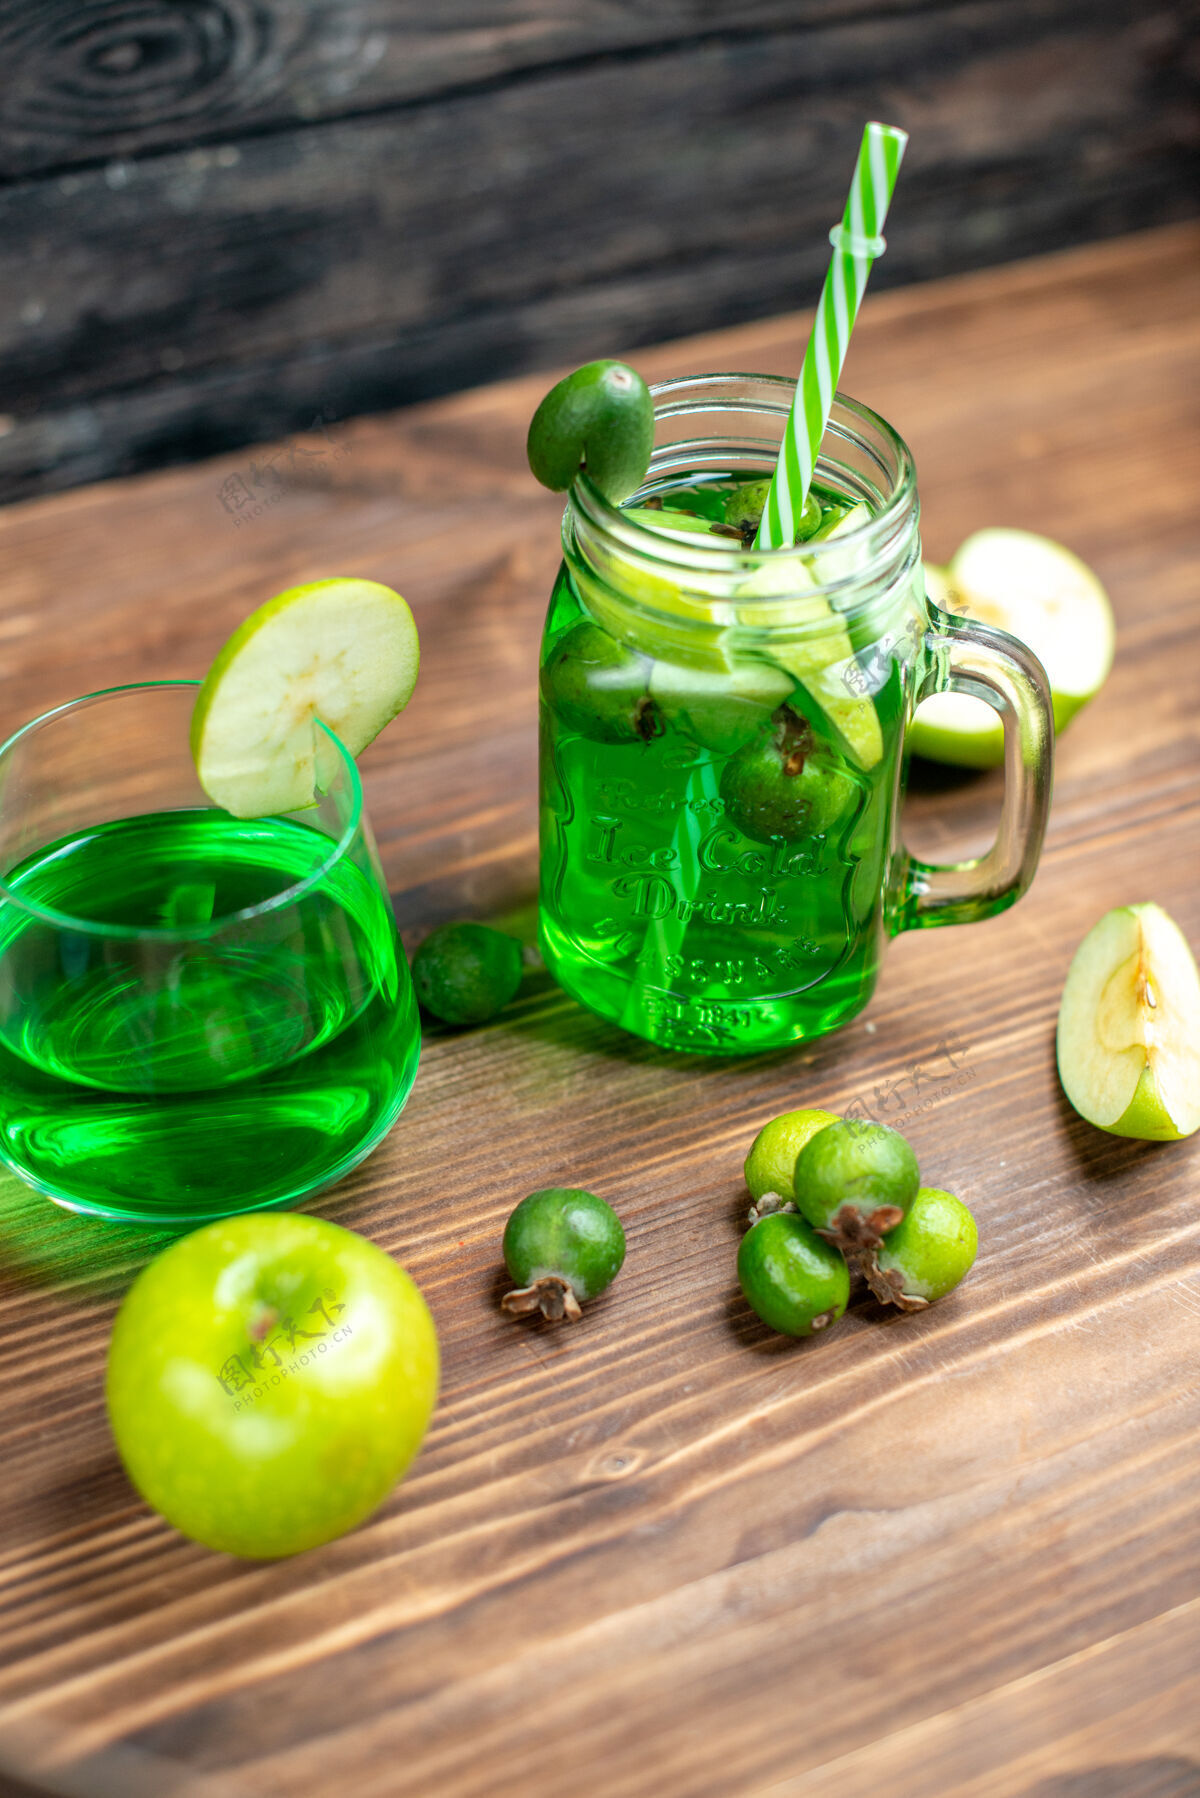 新鲜正面图绿色飞珠果汁内罐 木质桌上有绿色苹果吧水果色饮料照片鸡尾酒里面农产品饮食